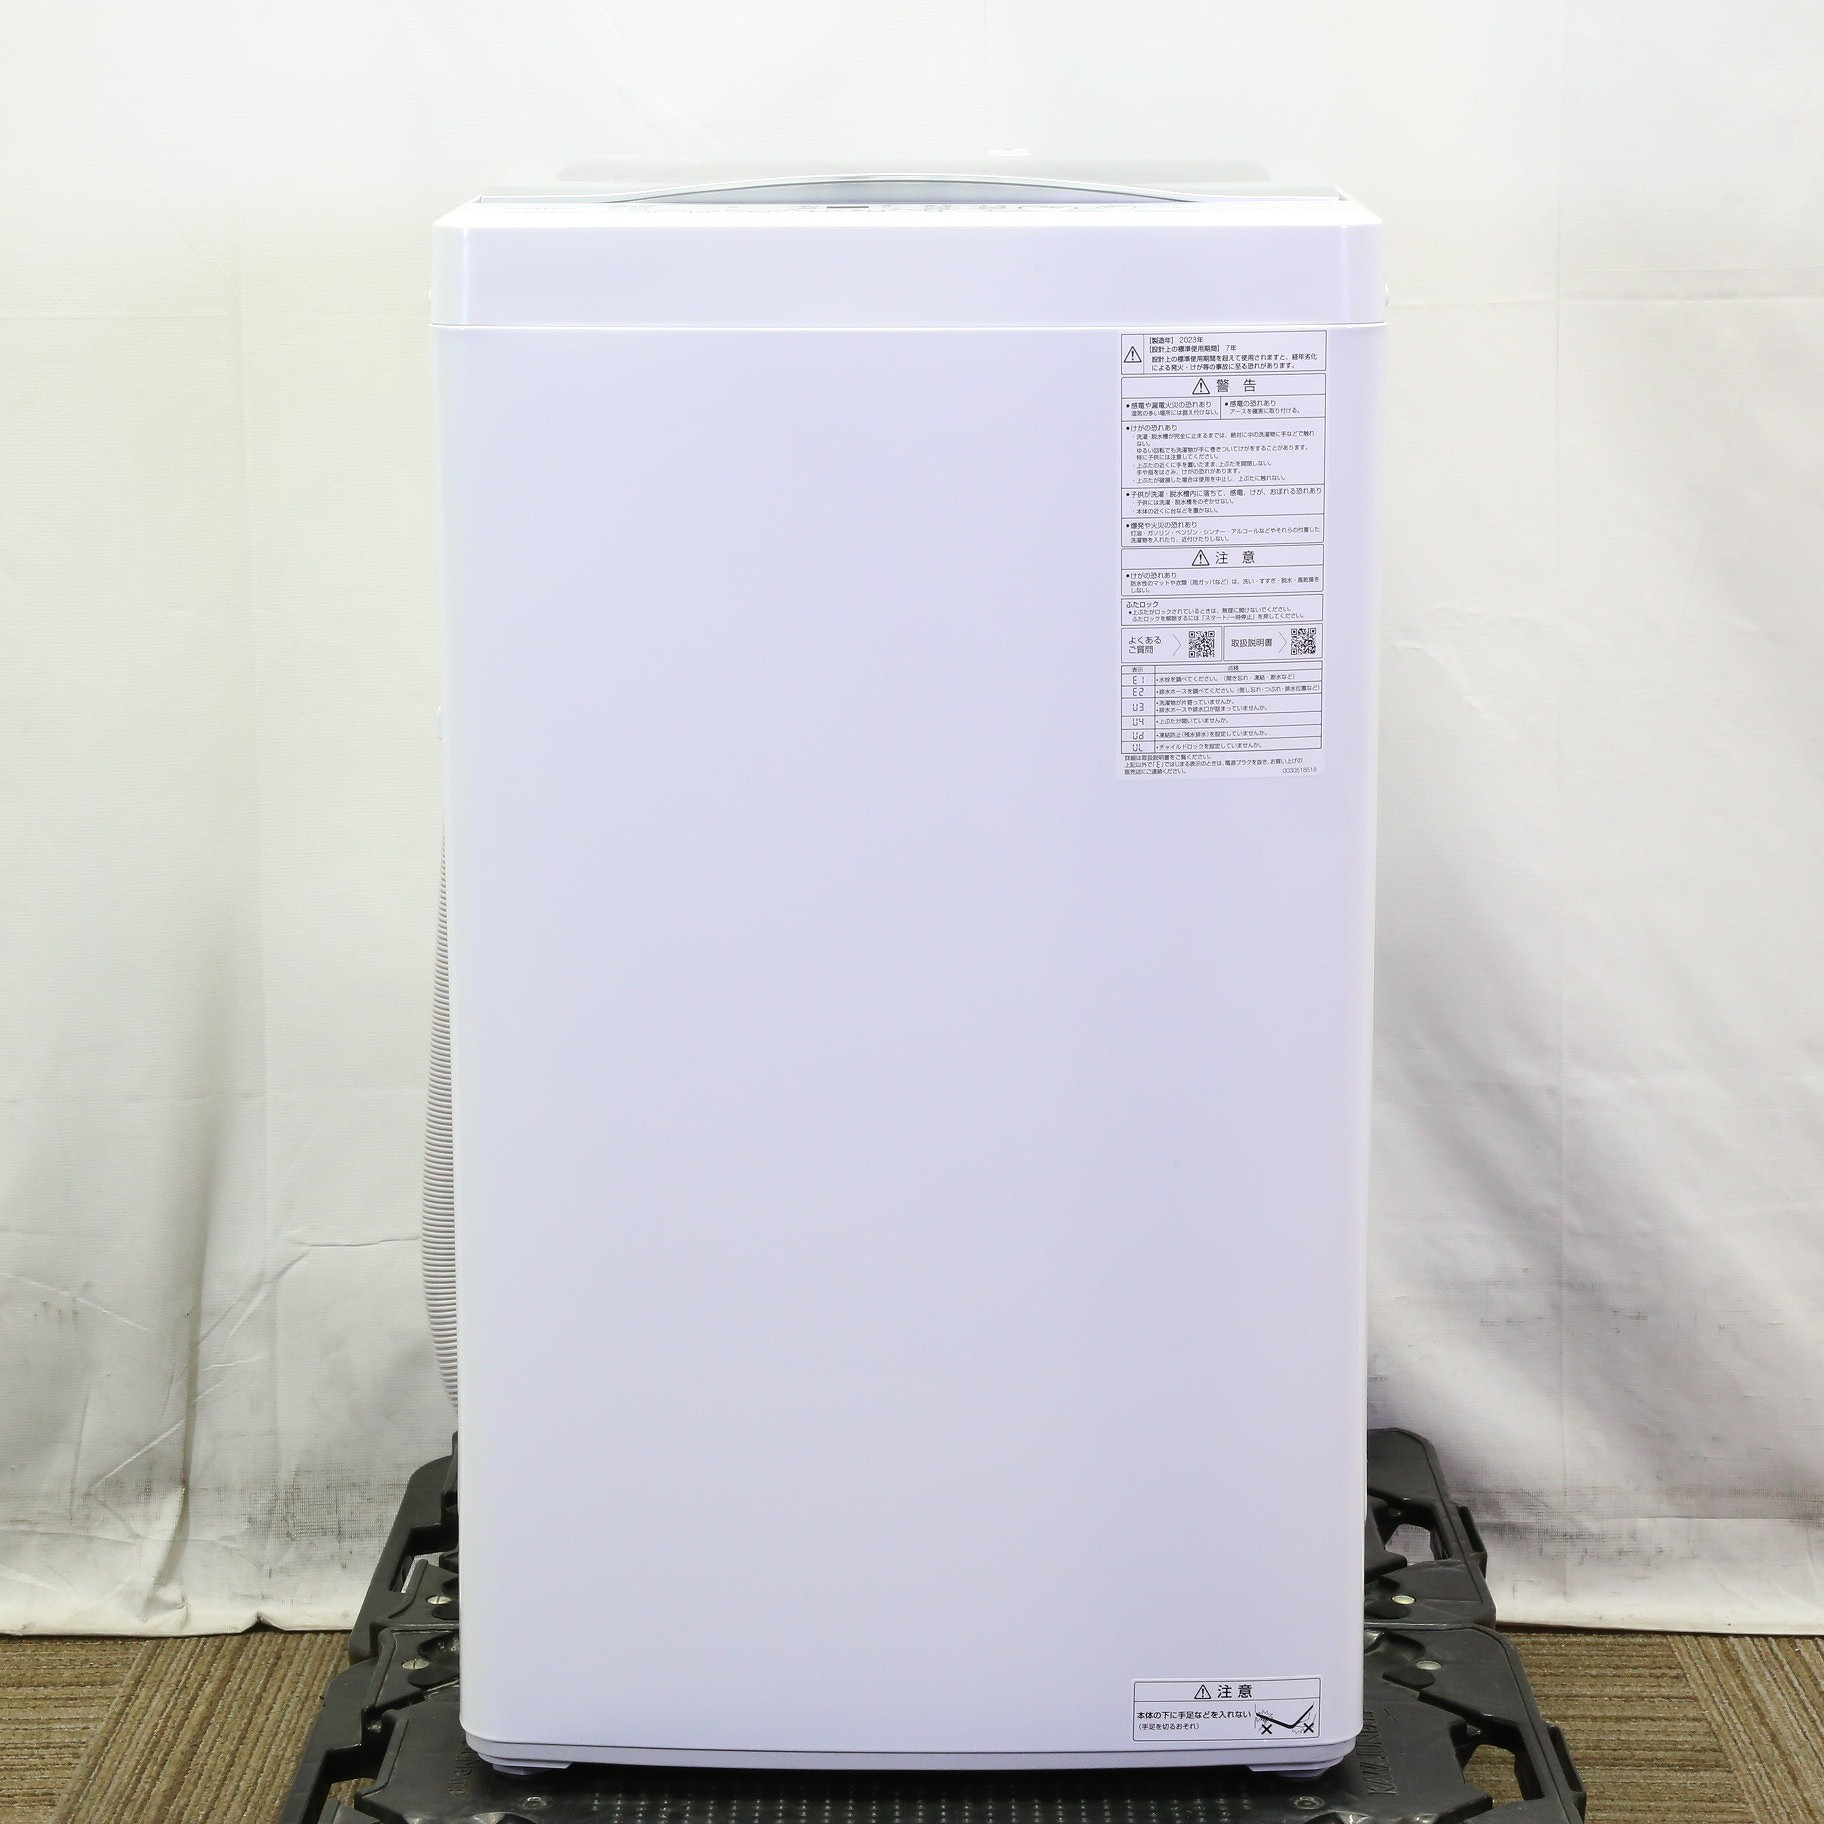 〔展示品〕 全自動洗濯機 フロストシルバー AQW-S6PBK(FS) ［洗濯6.0kg ／簡易乾燥(送風機能) ／上開き］